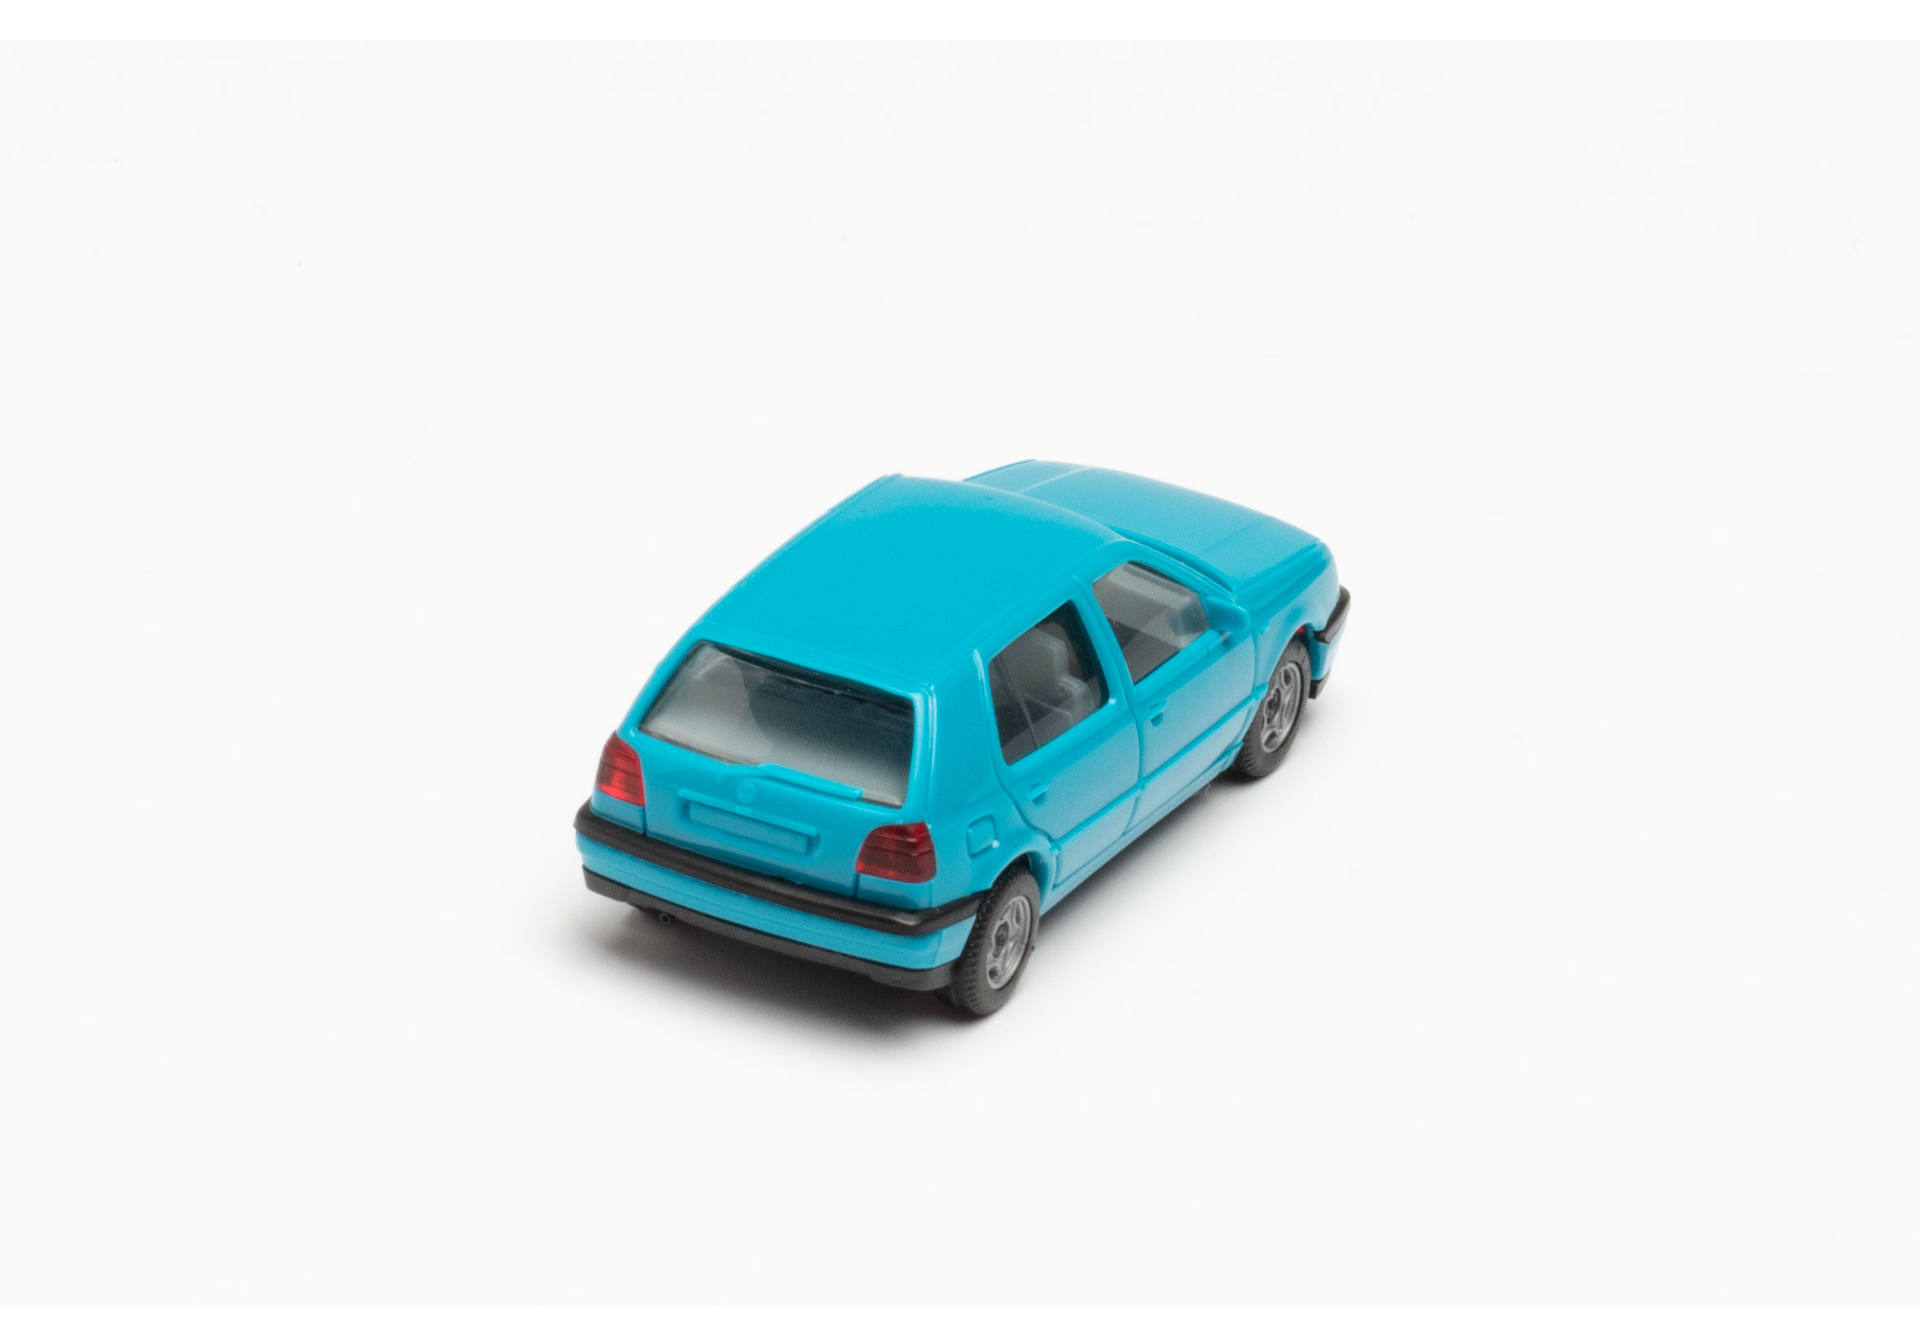 Minikit VW Golf III, blautürkis